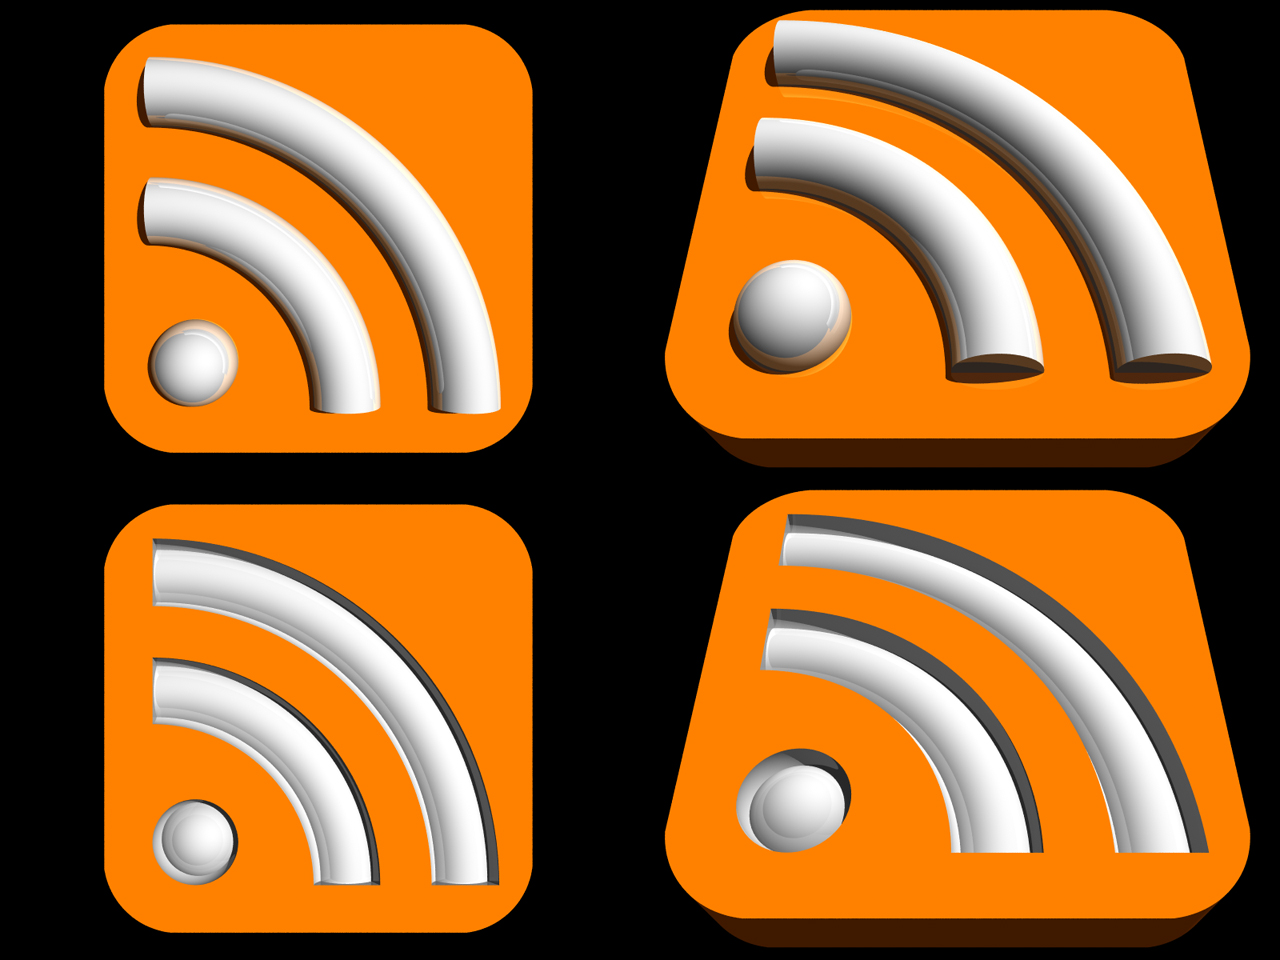 3D RSS Logo 2